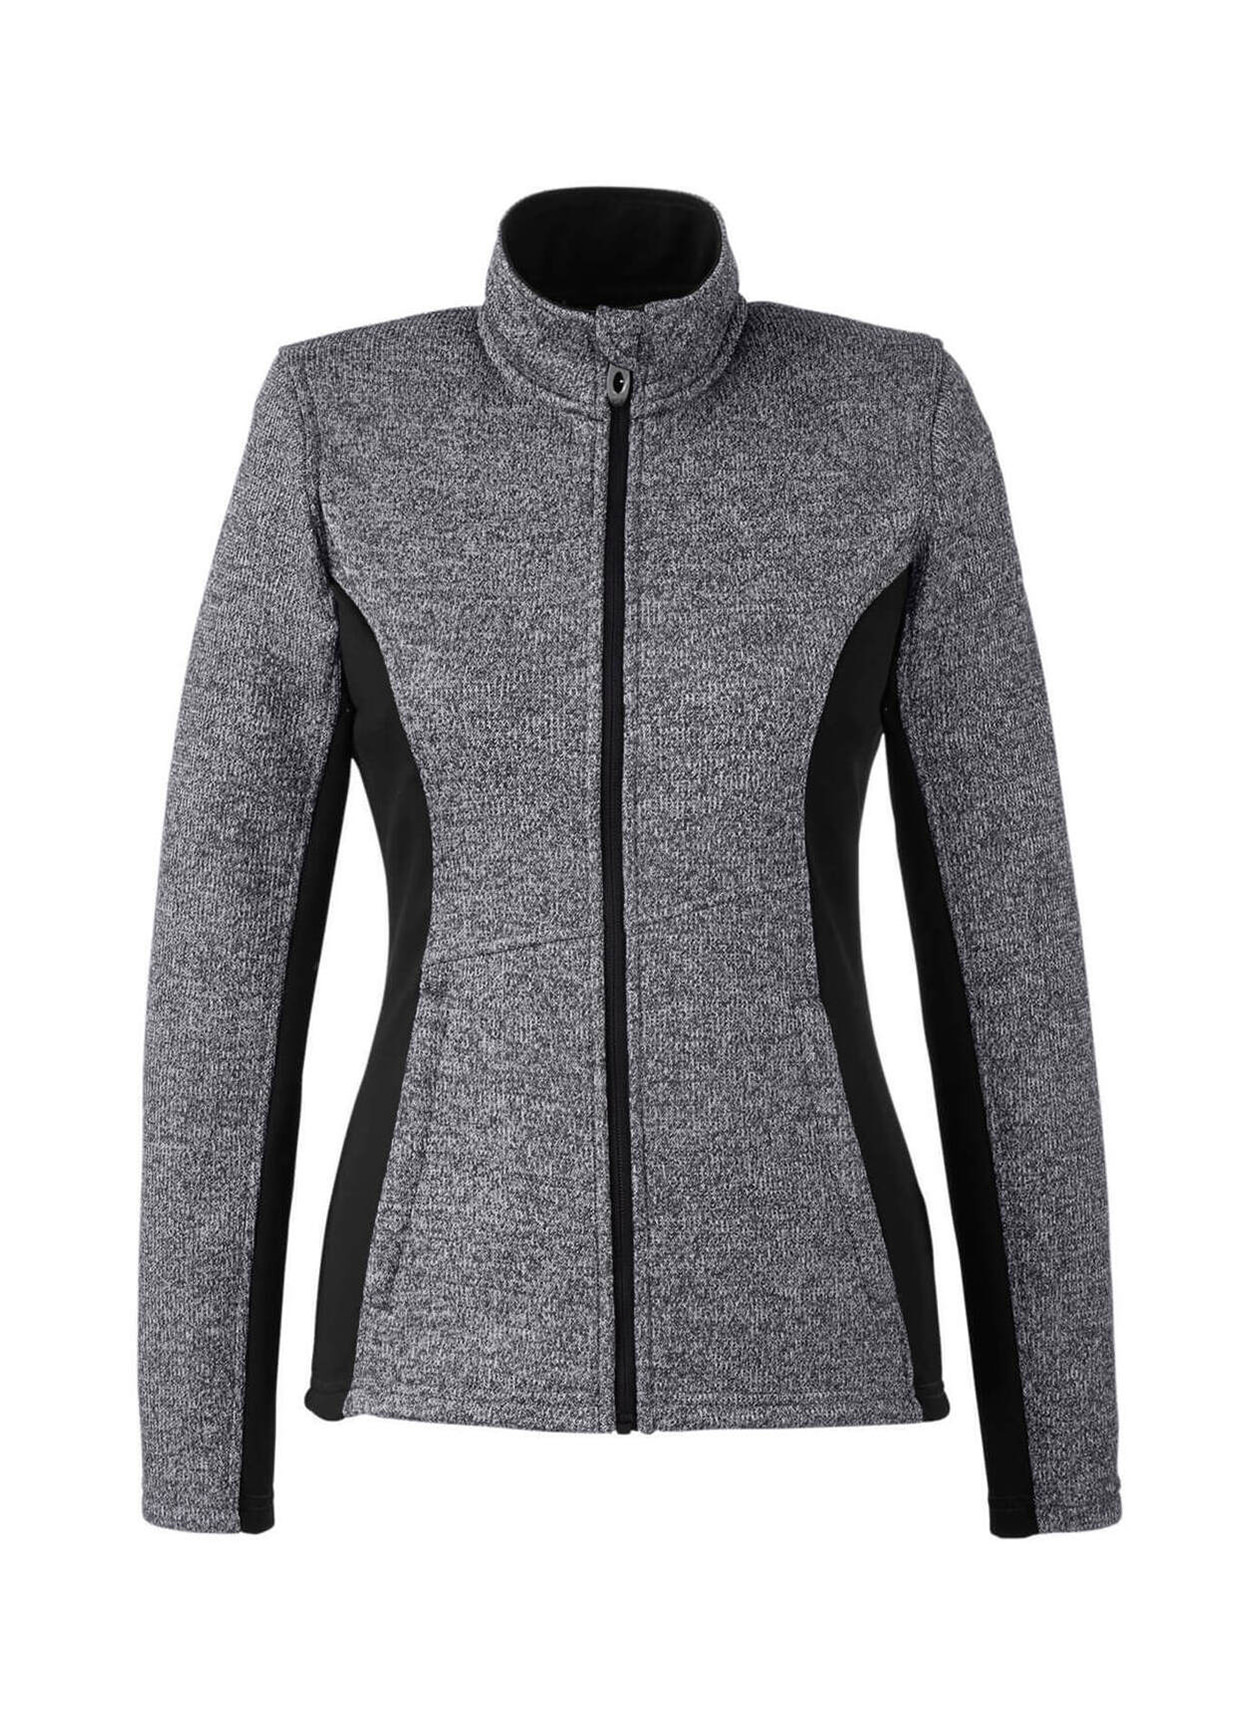 Spyder Women's Black Heather / Black Constant Sweater Fleece Jacket